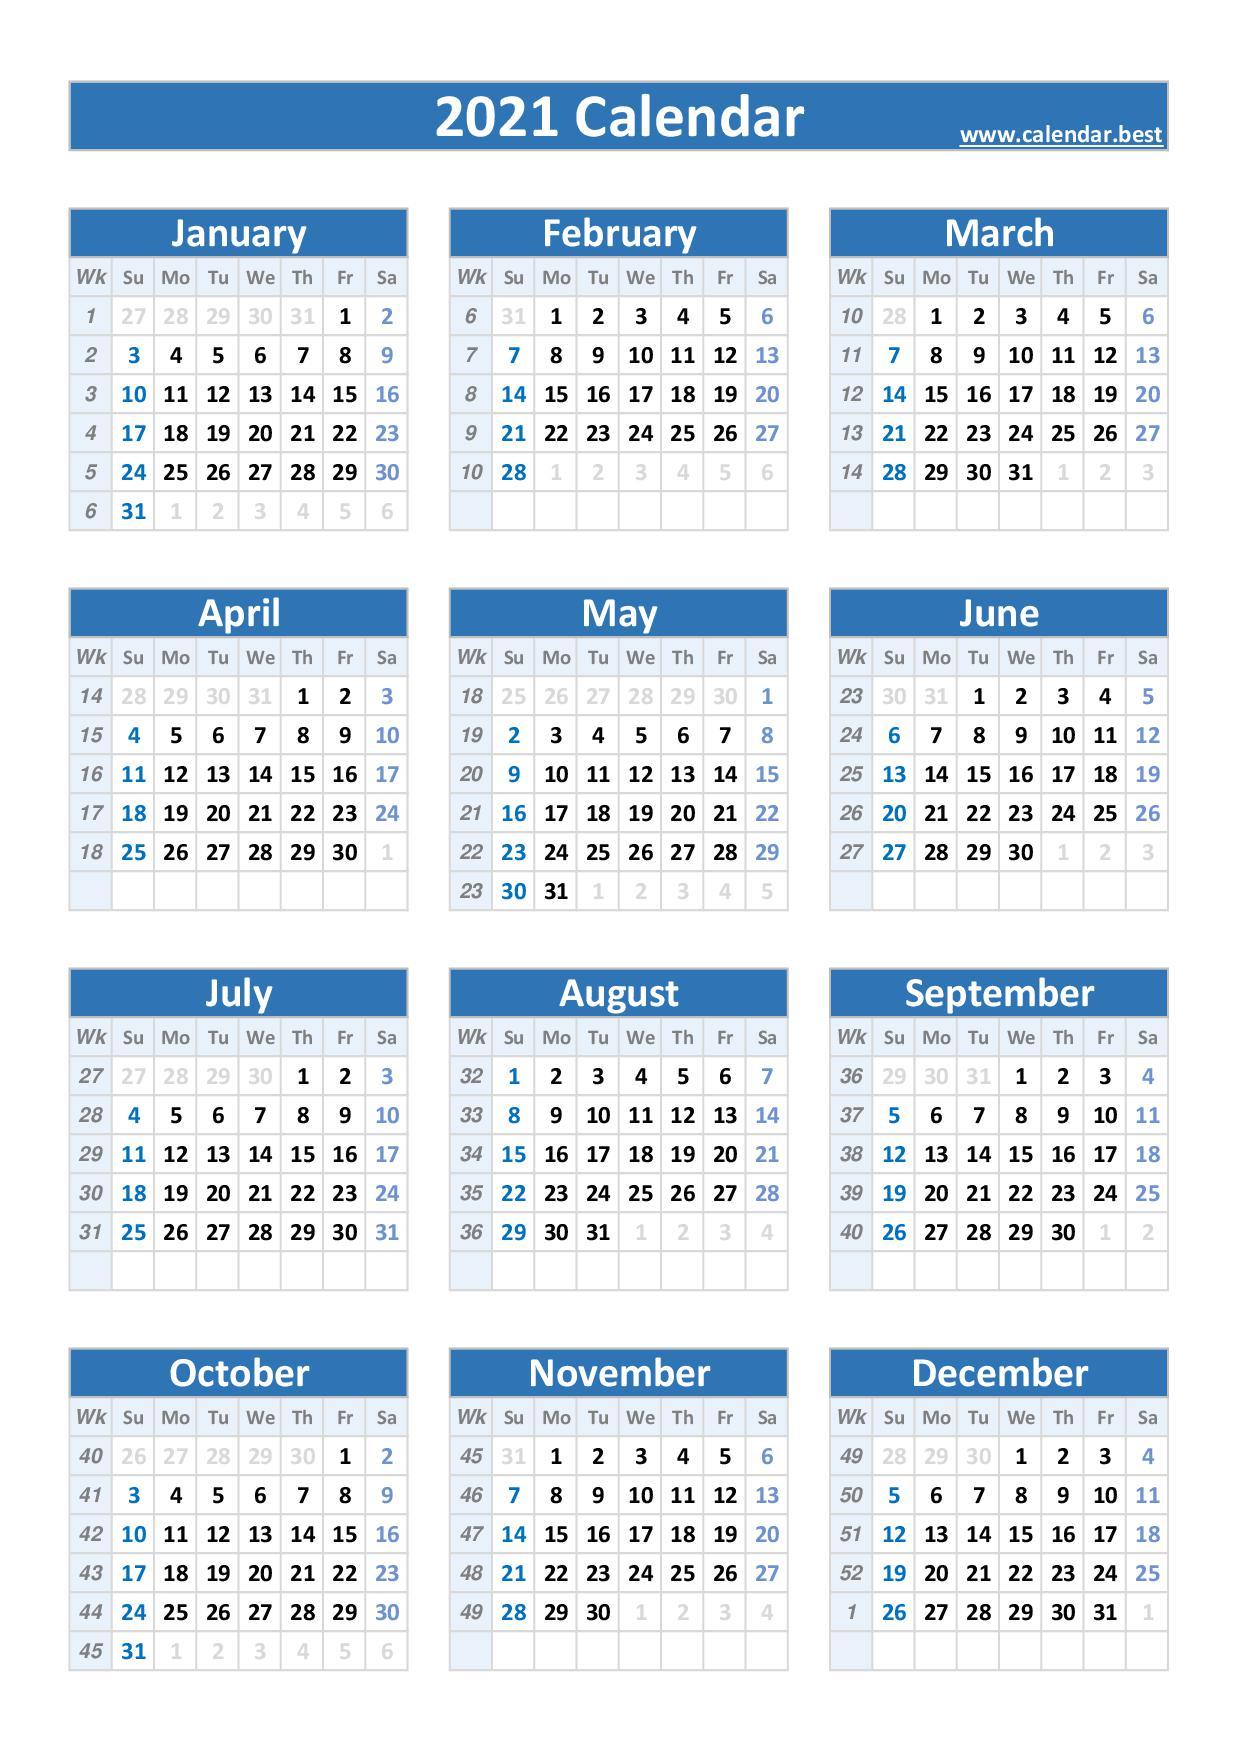 2021 calendar with week numbers -Calendar.best